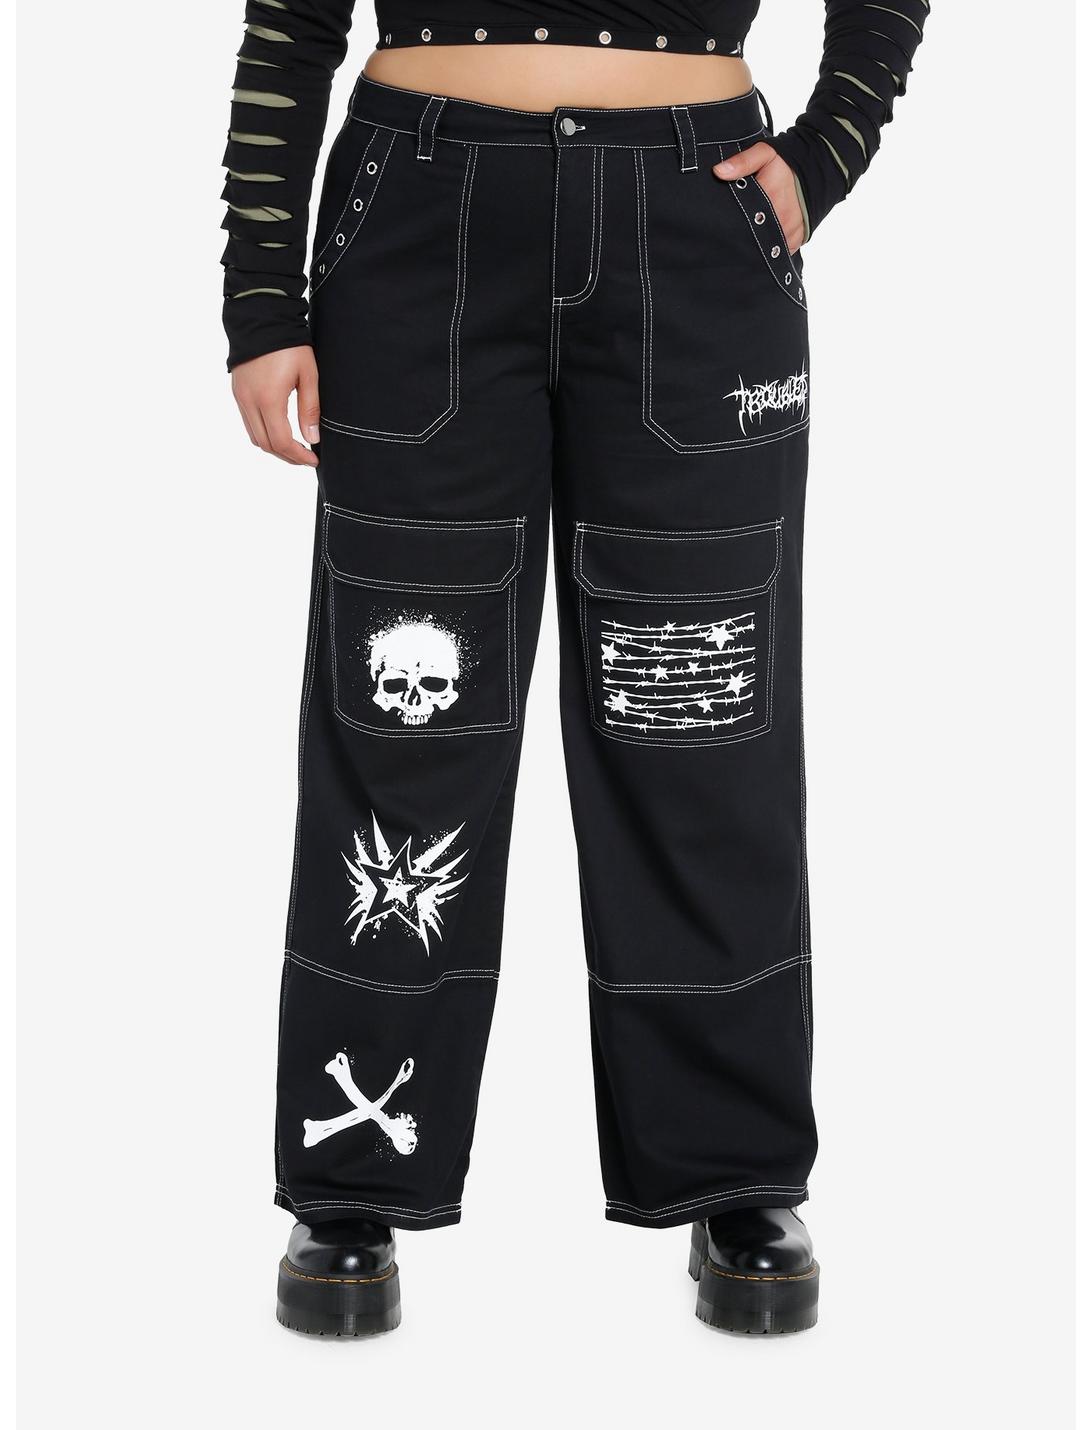 Black Punk Icons Wide Leg Pants Plus Size